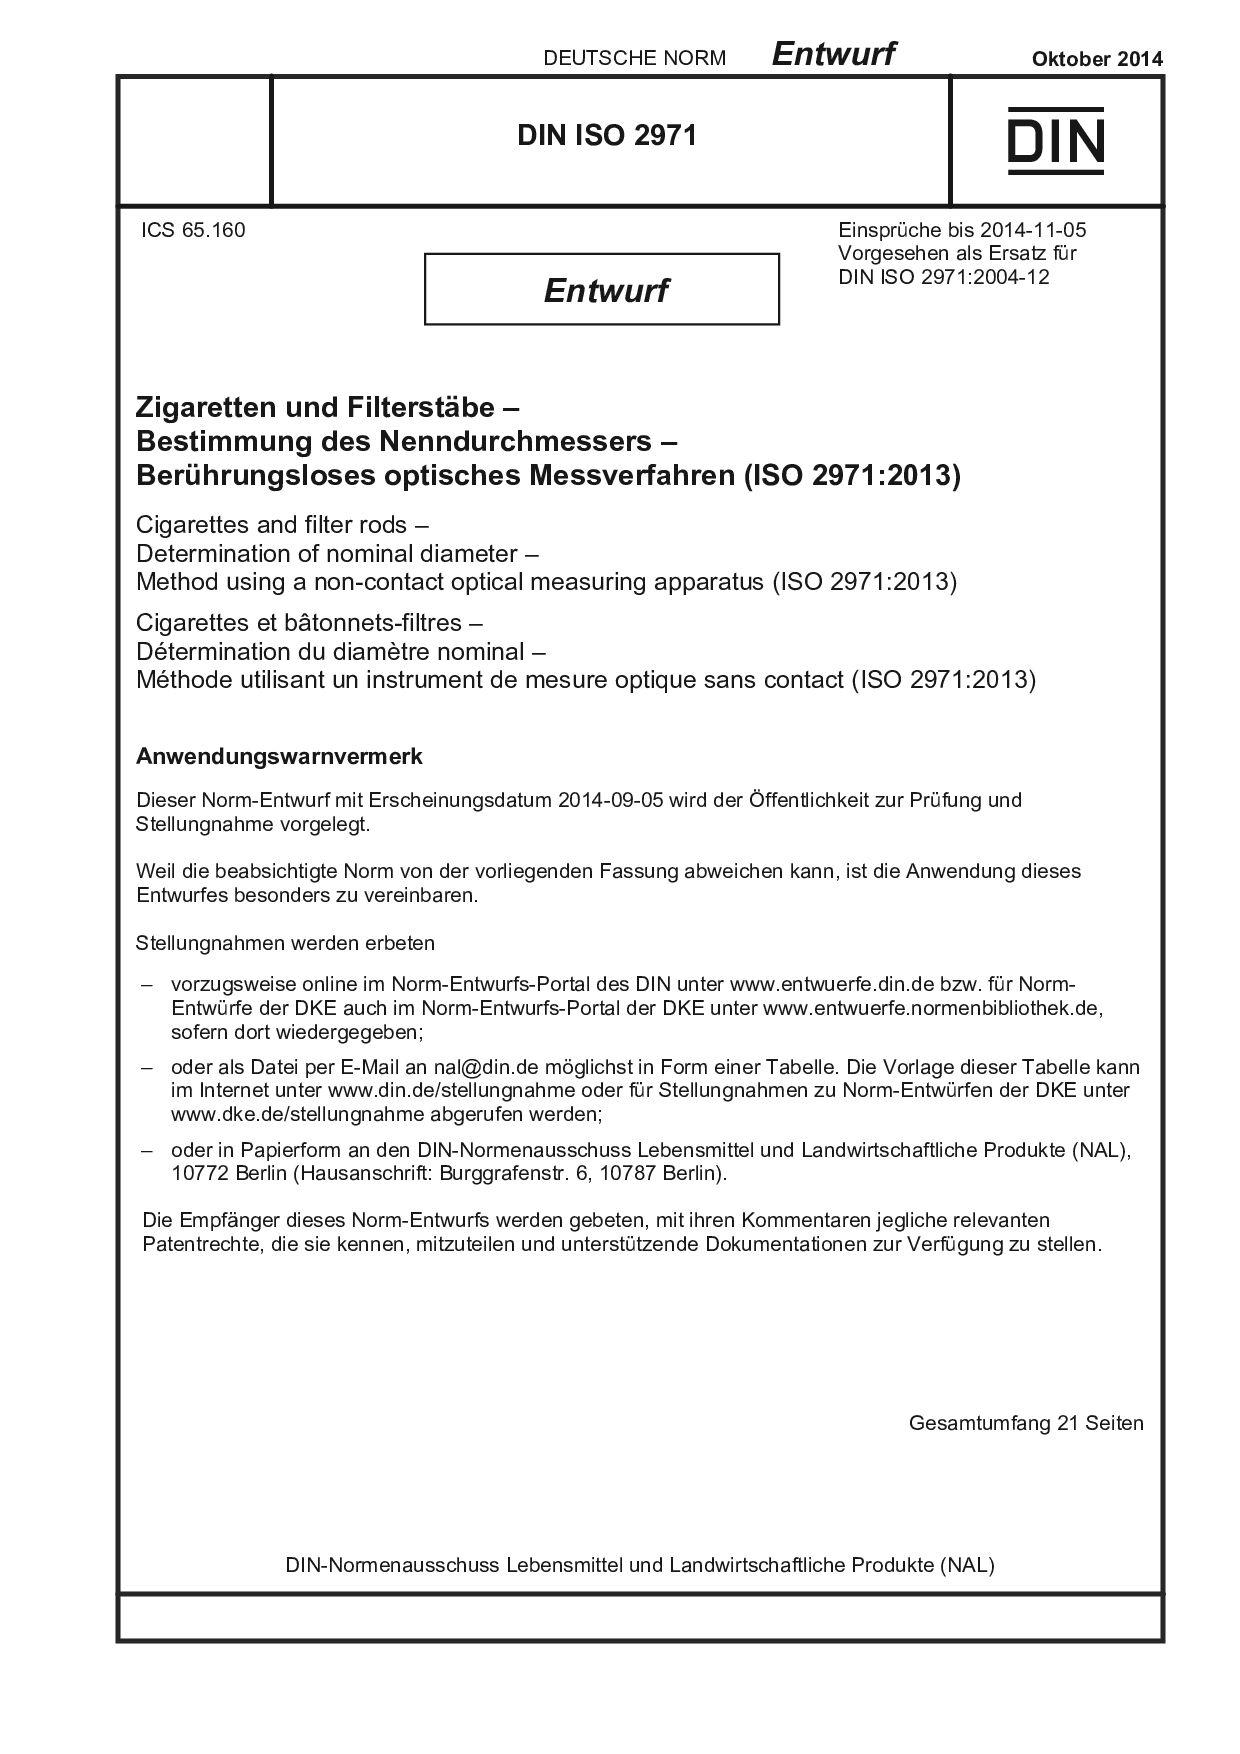 DIN ISO 2971 E:2014-10